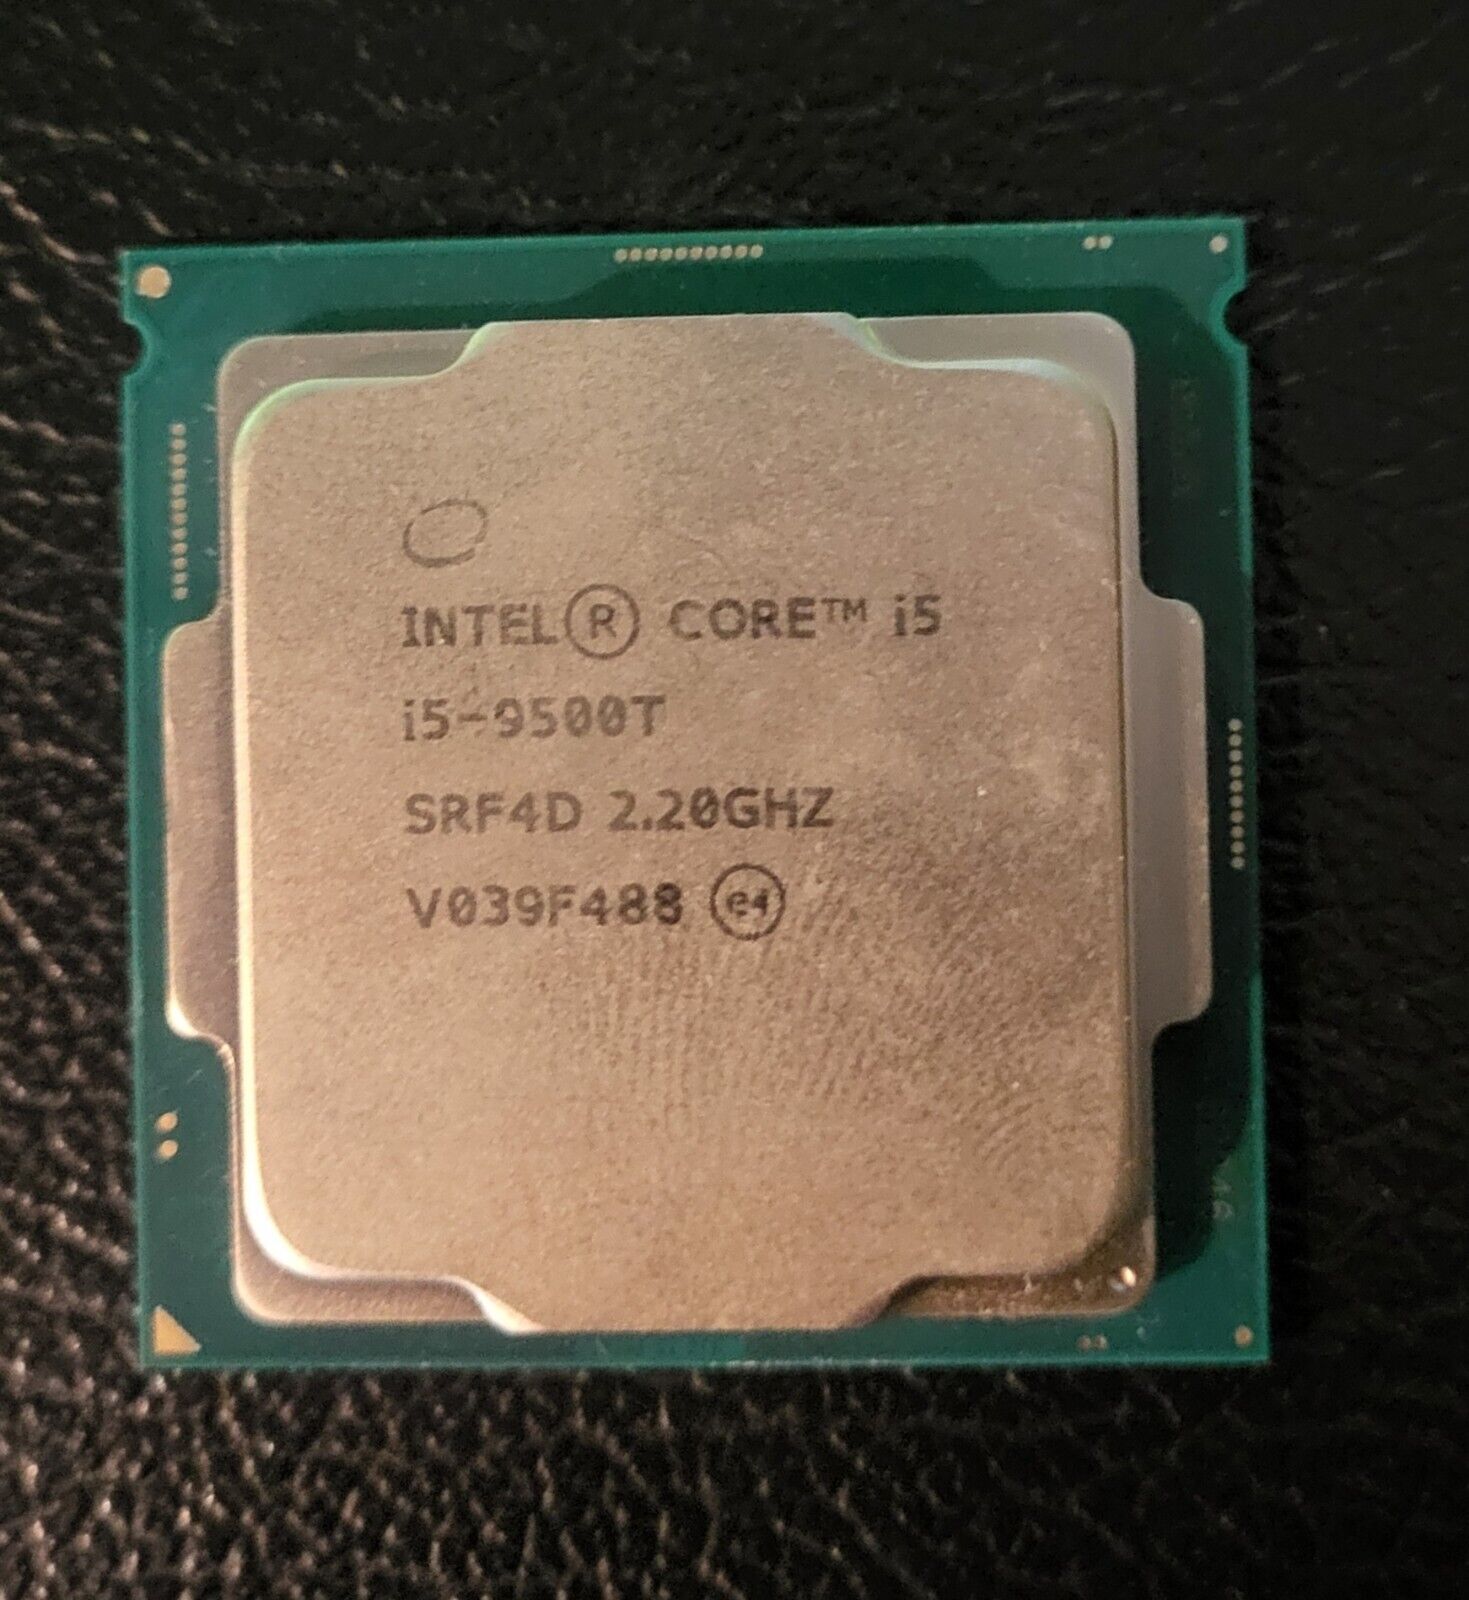 Intel Core i5-9500T SRF4D 2.2GHz CPU Processor